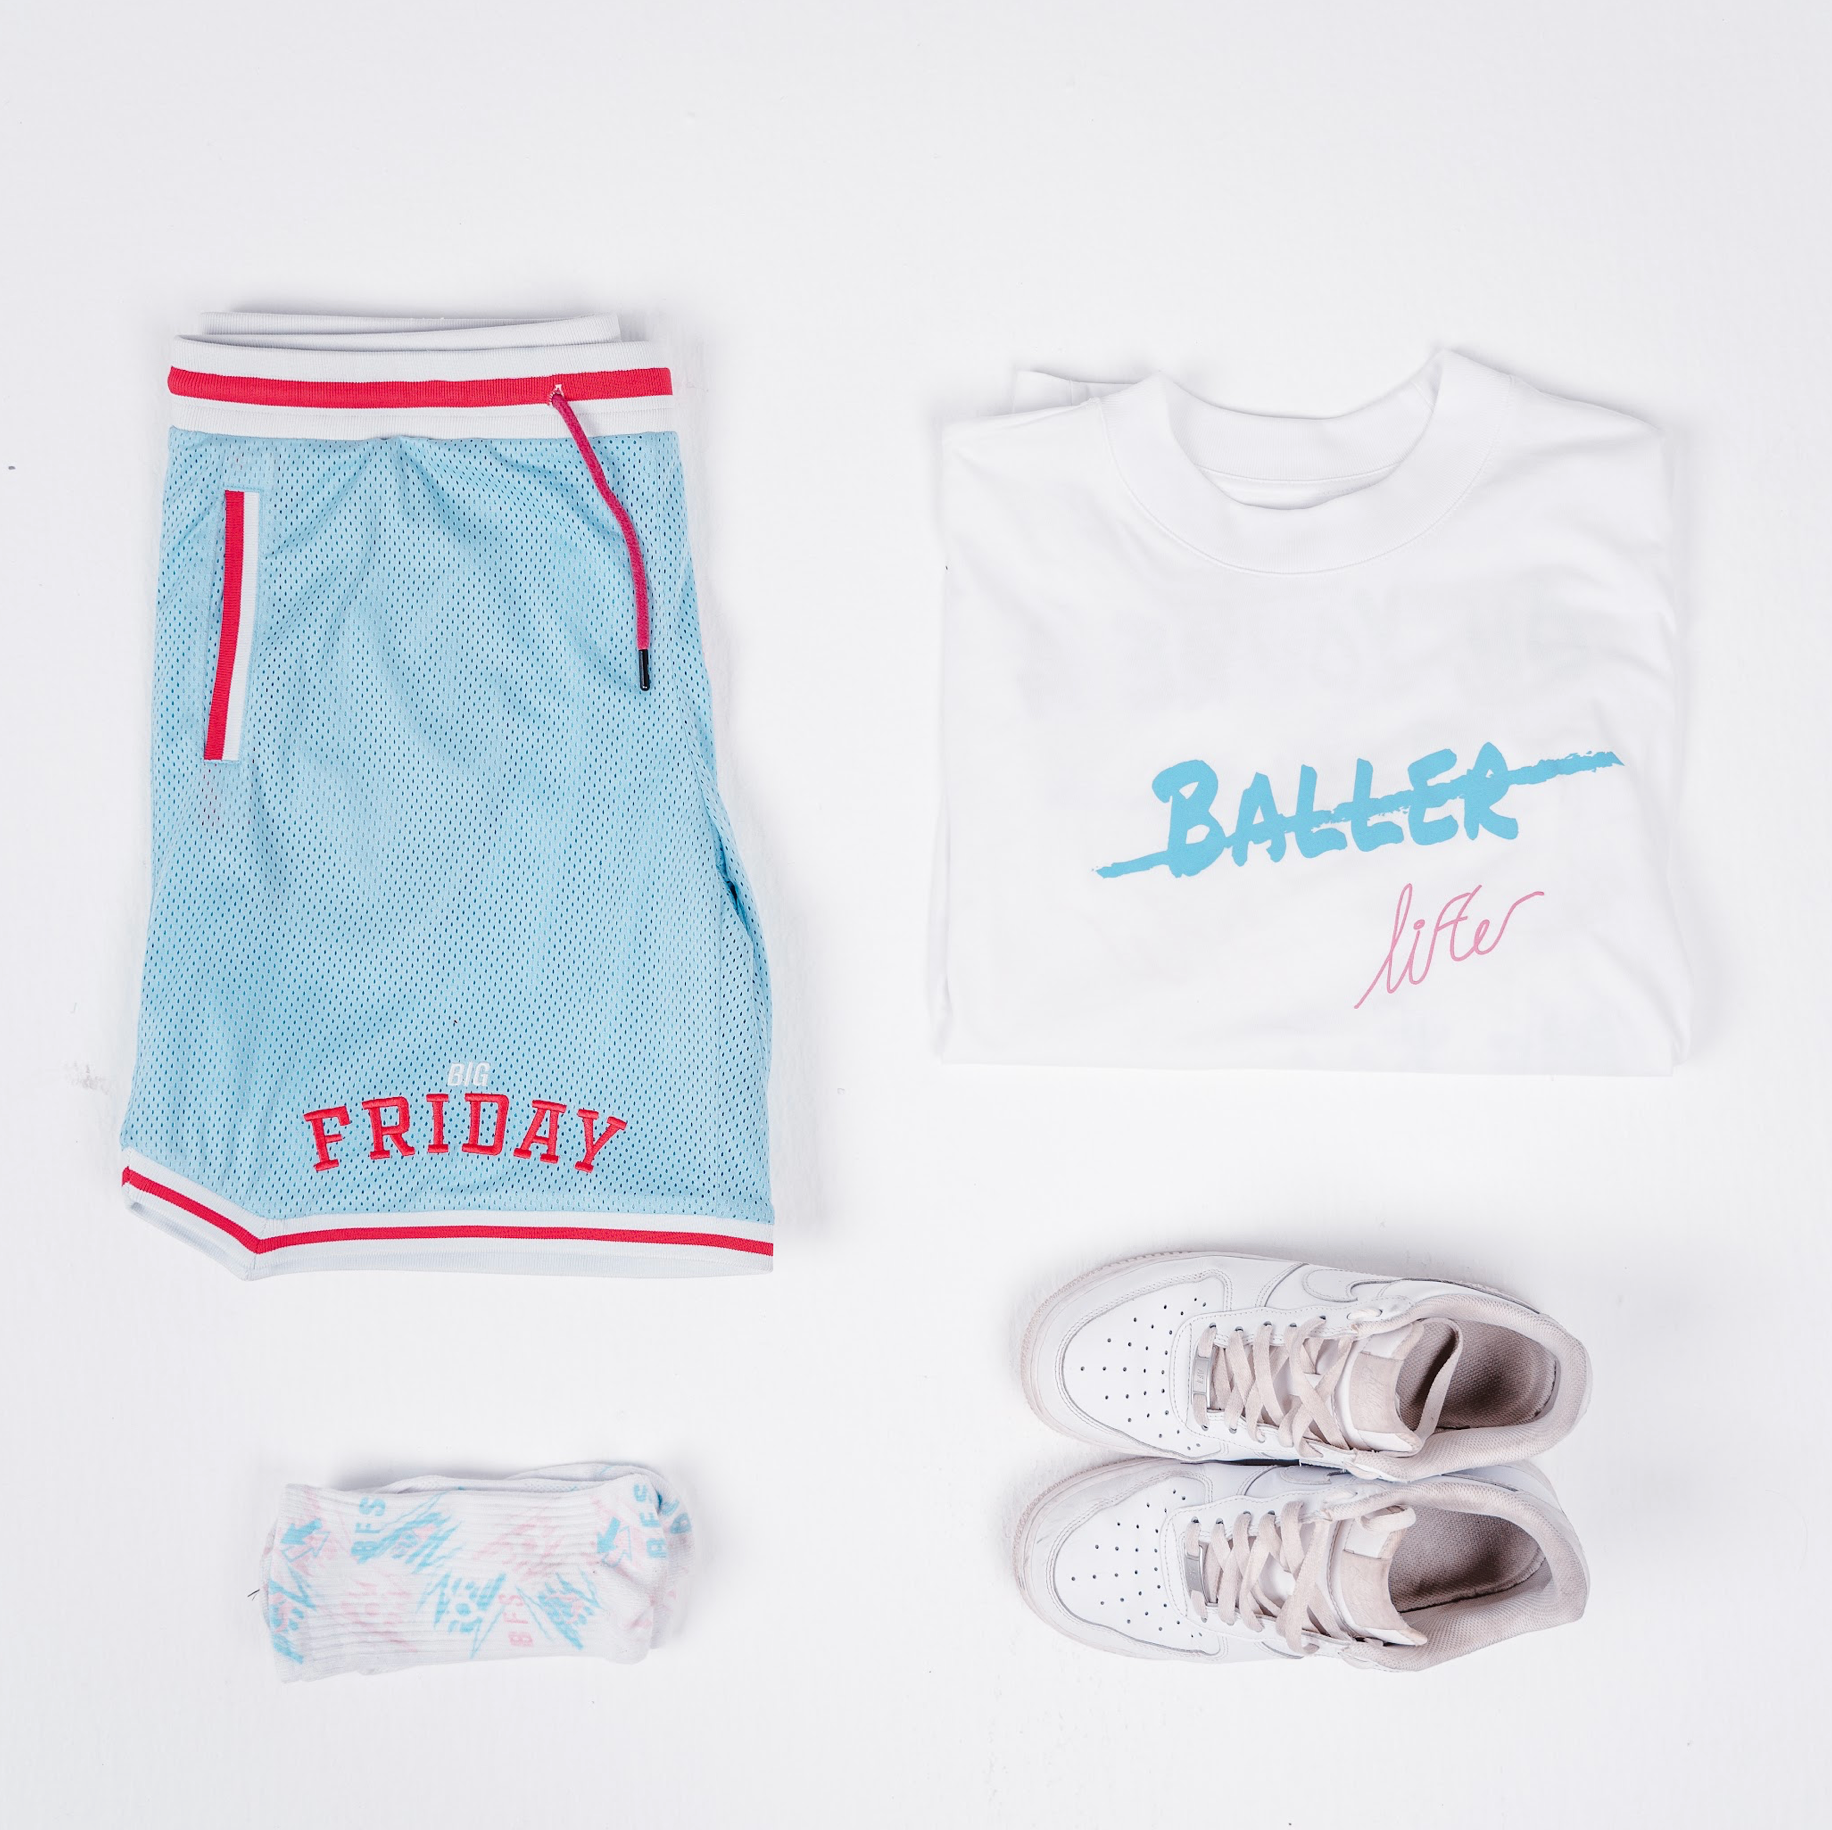 Baller Socks - Pink/Blue